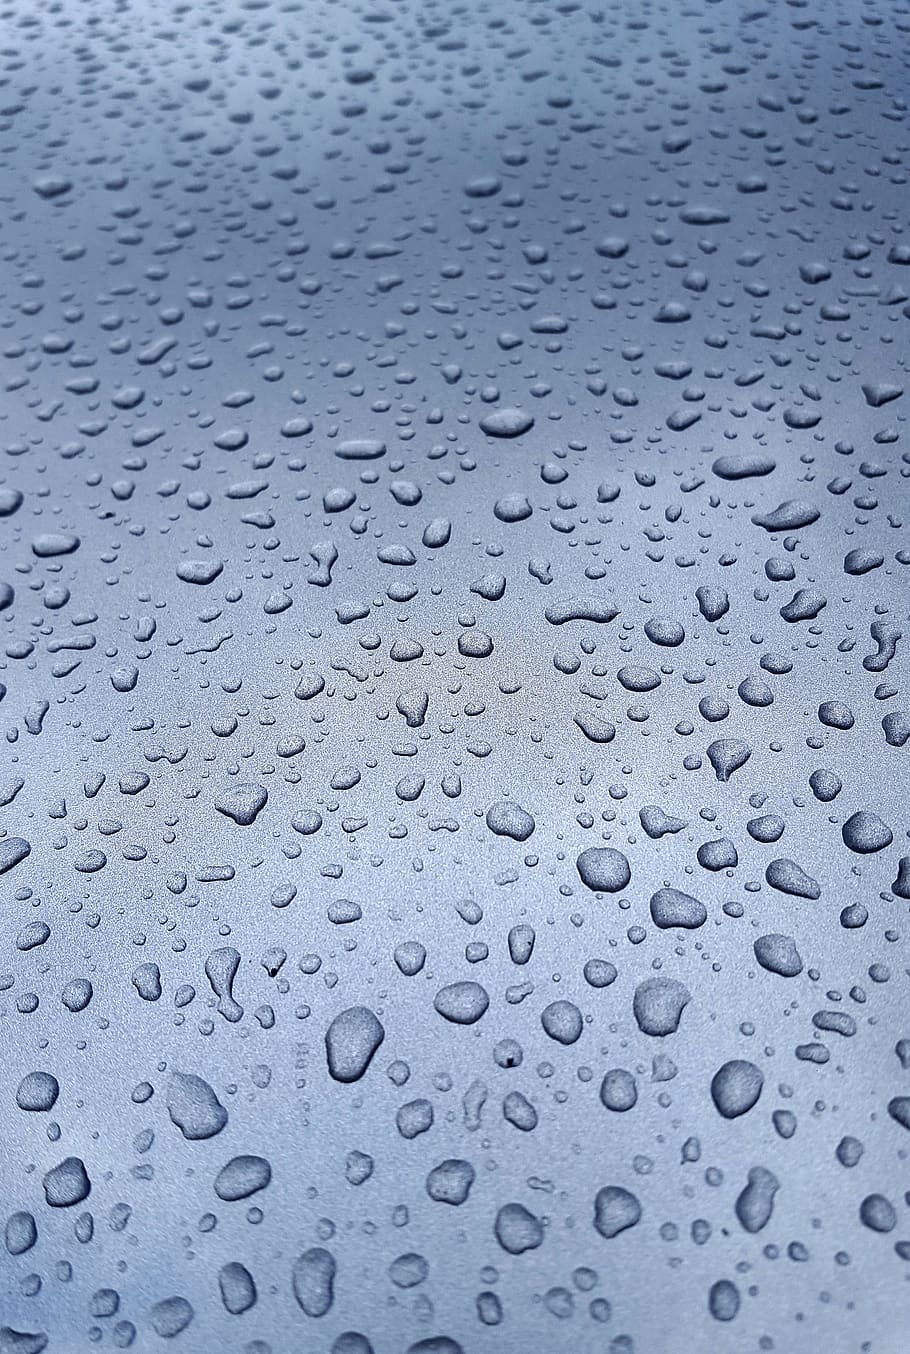 rain, window, raindrop, paint, auto, wet, beaded, drop of water, pattern, sad